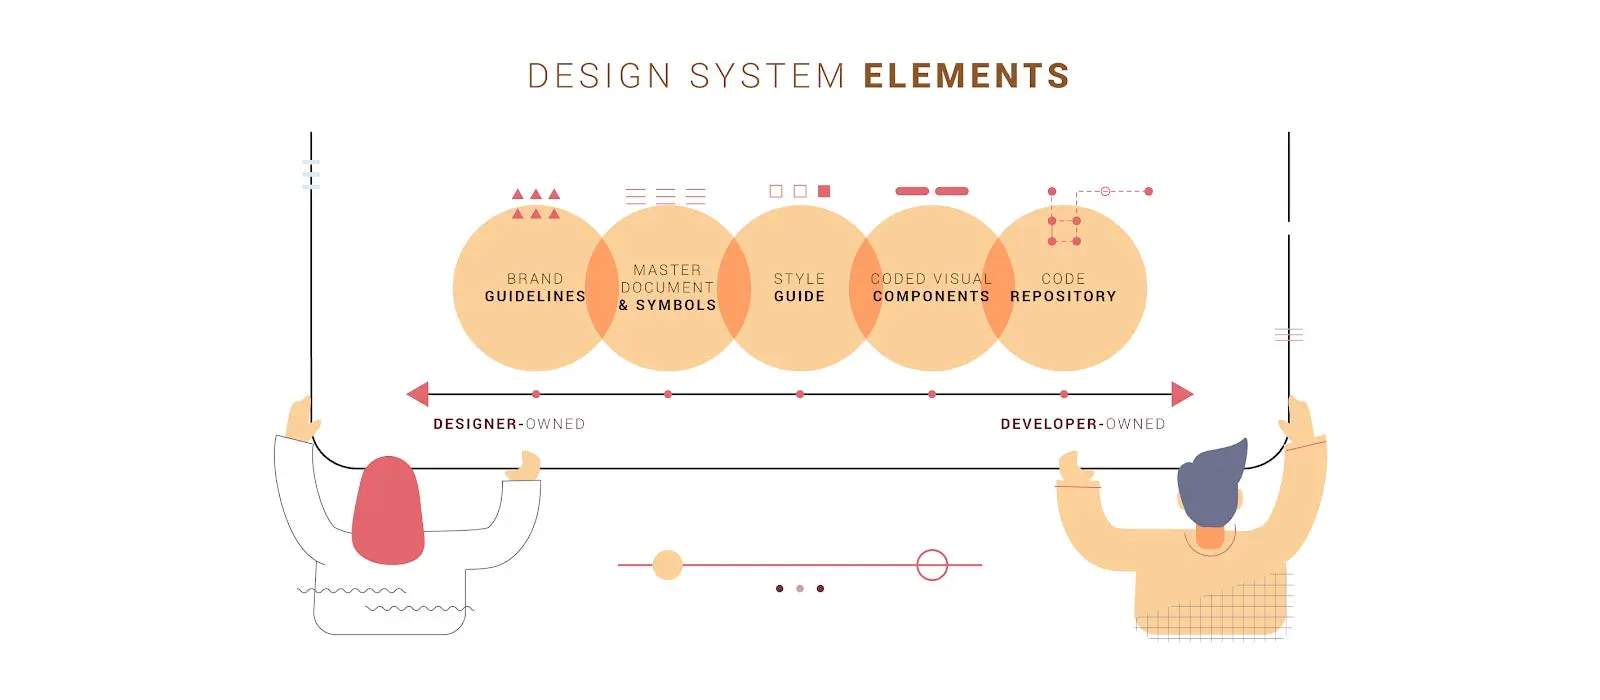 デザイナーと開発者の所有の度合いで見るデザインシステムの要素の例。